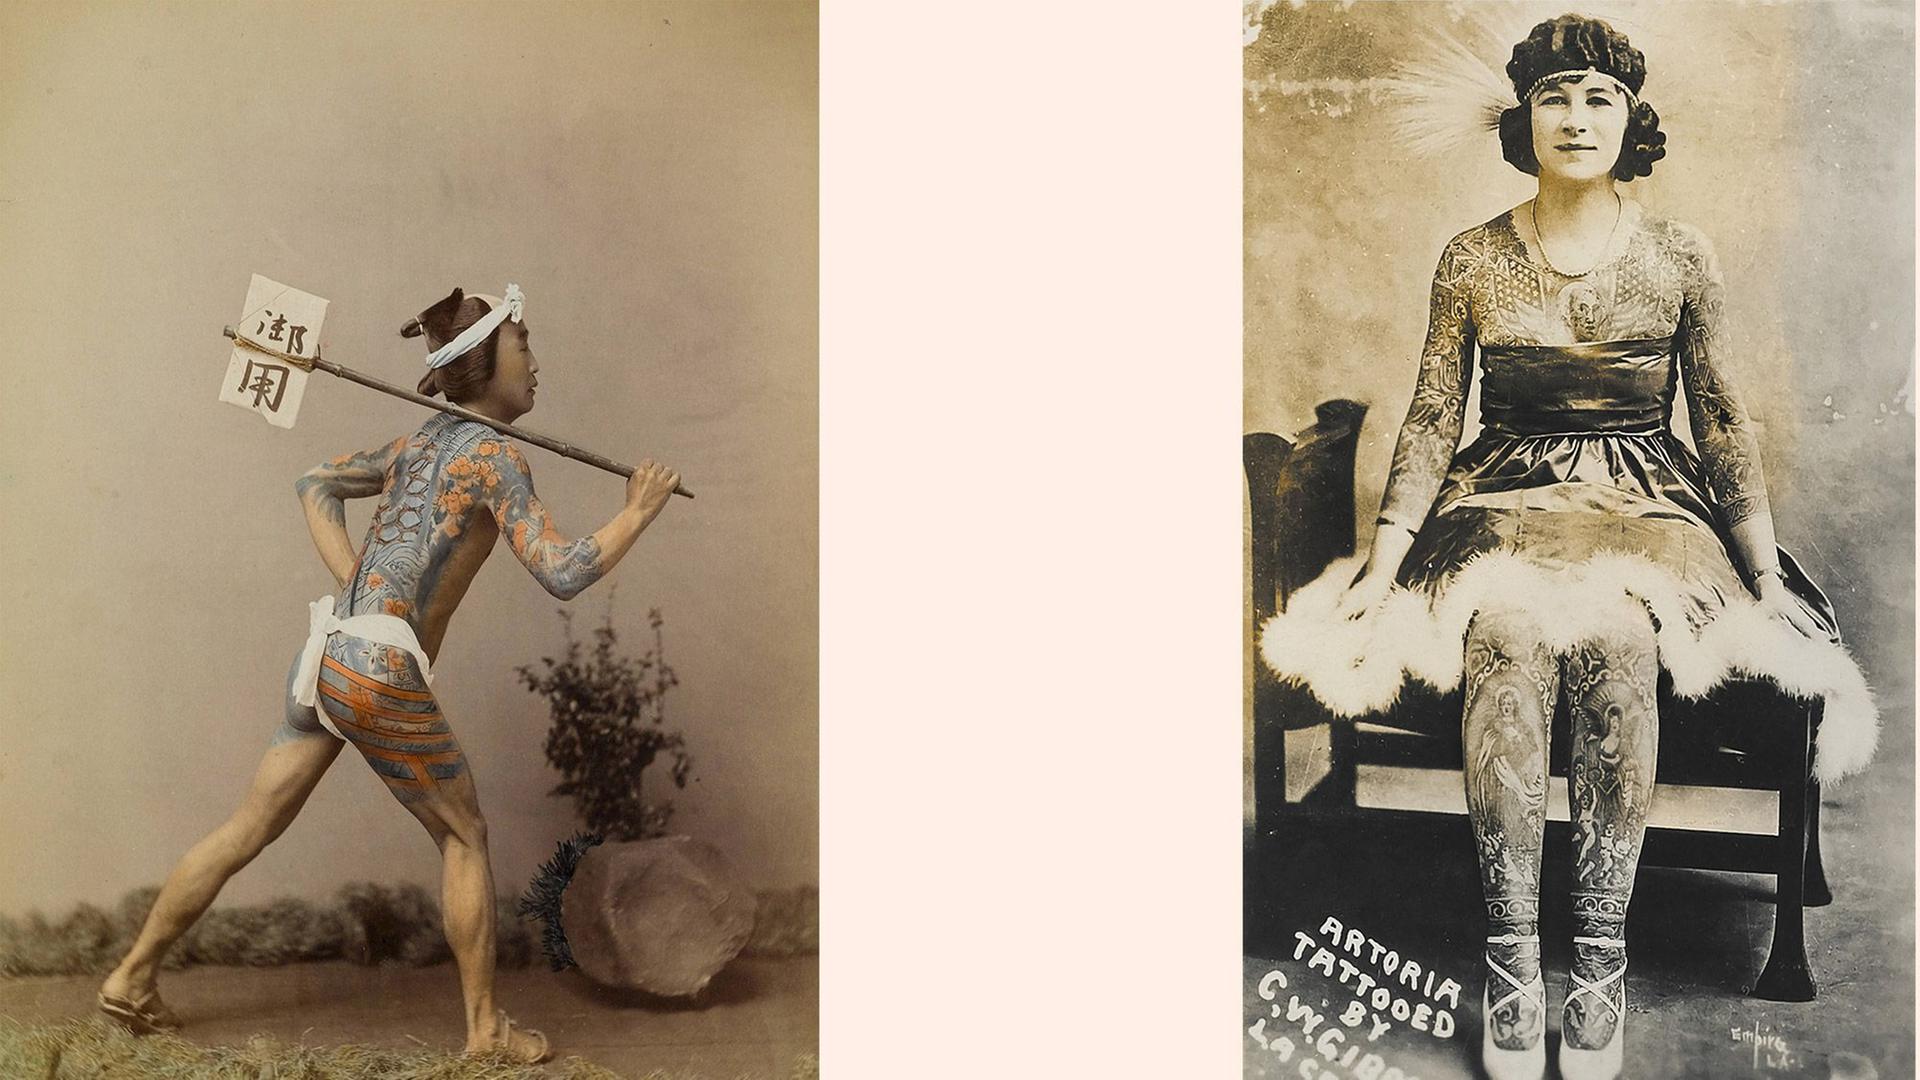 Eine Bildcollage zeigt einen japanischen Mann mit bunt tätowiertem Körper und eine Tänzerin mit Tattoos über den ganzen Körper verteilt.